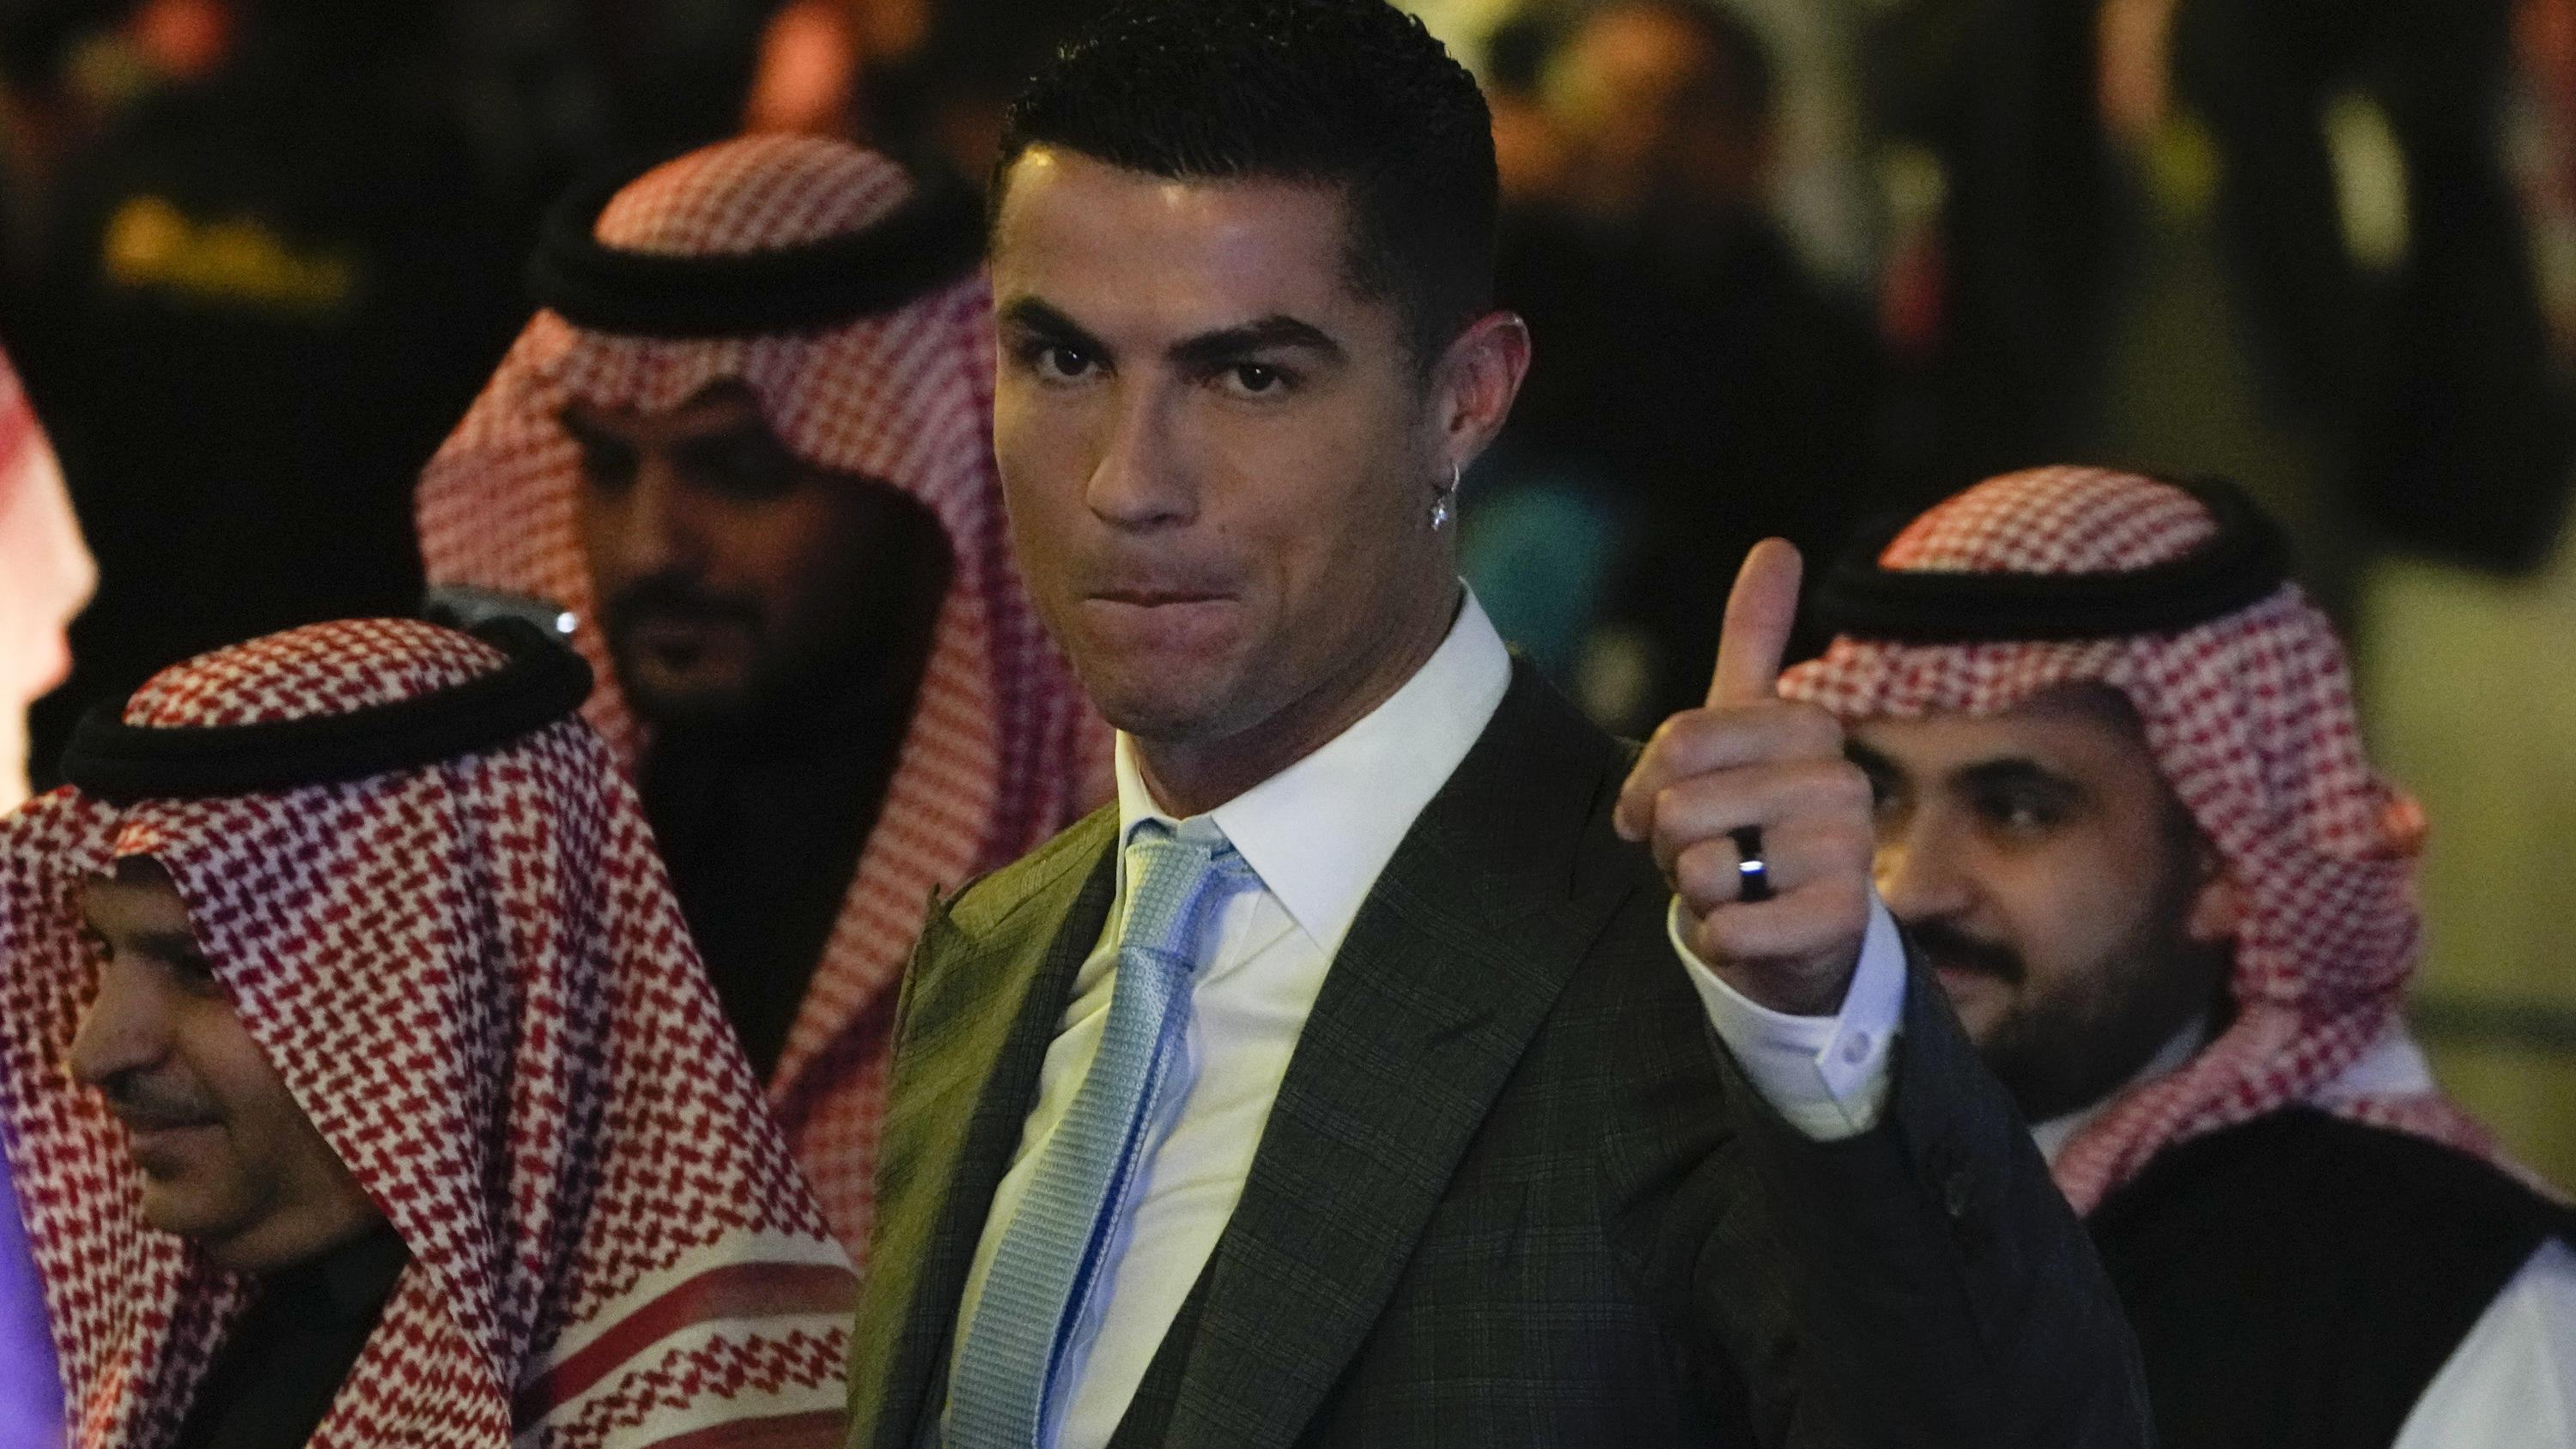 03.01.2023, Saudi-Arabien, Riad: Cristiano Ronaldo, portugiesischer Fußballstar, reagiert während seiner offiziellen Vorstellung als neues Mitglied des Fußballclubs Al Nassr. Ronaldo schloss einen lukrativen Wechsel zum saudi-arabischen Klub Al Nassr